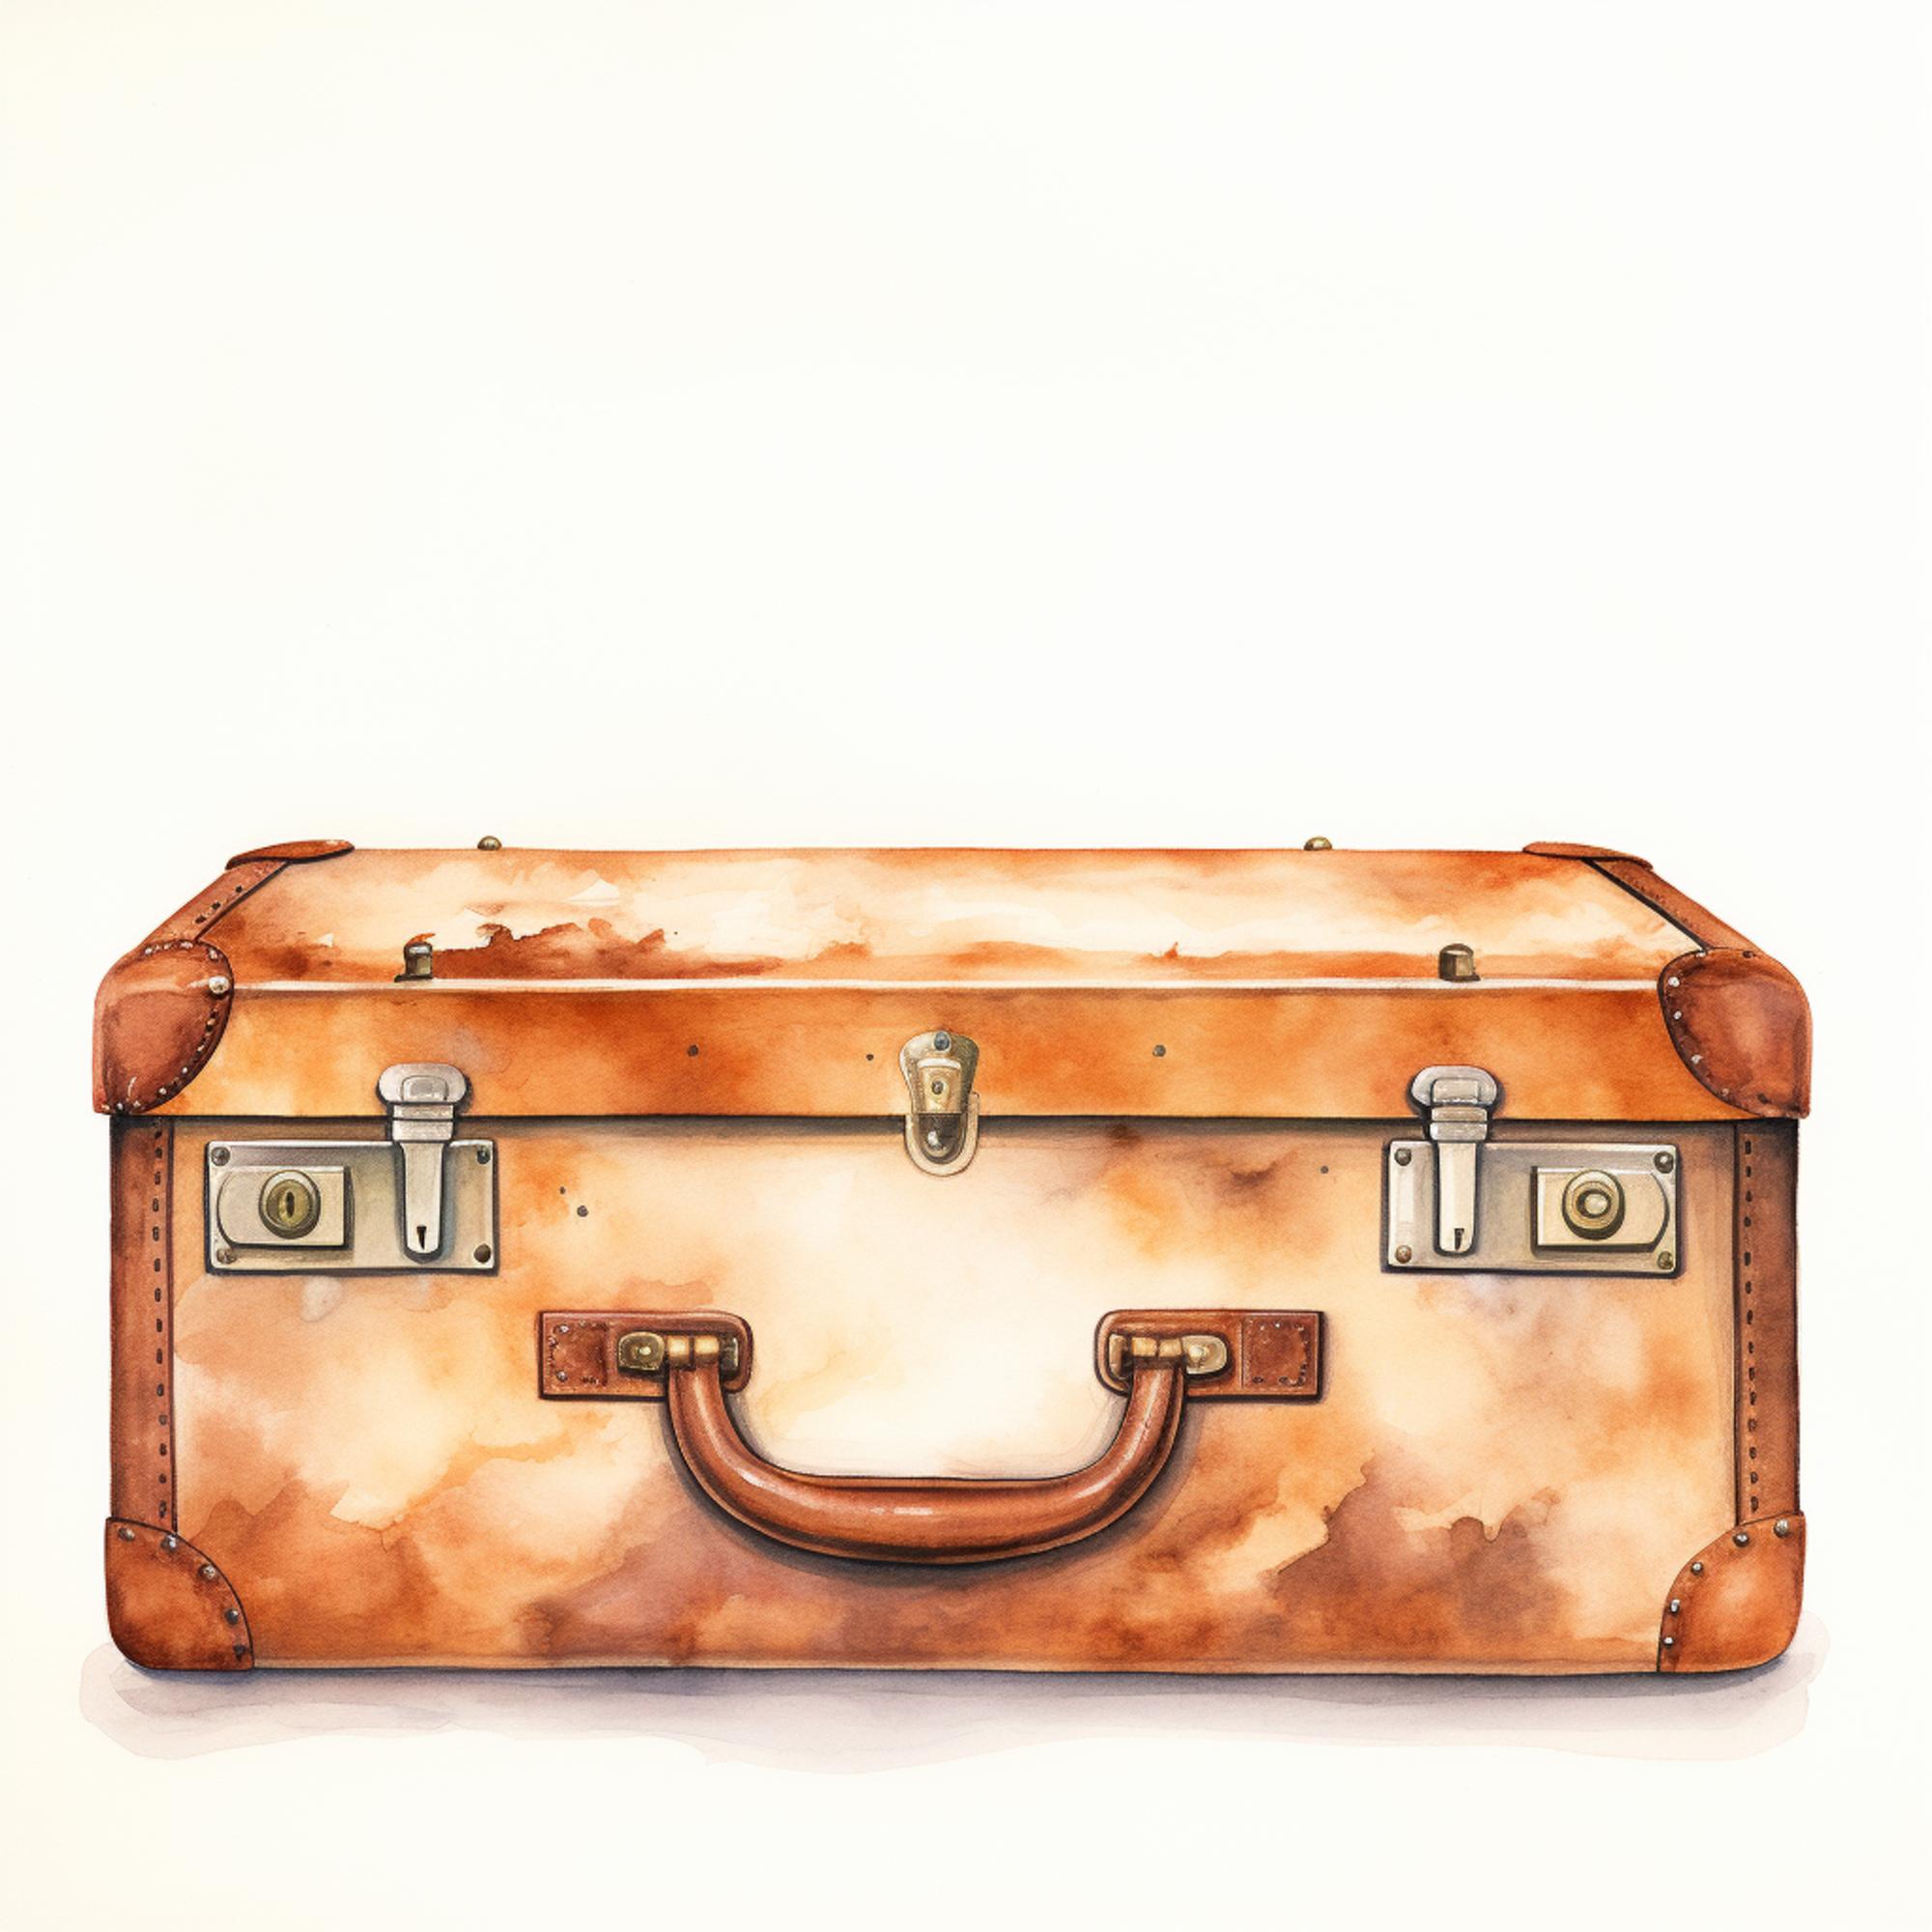 Il y a une peinture d'une valise avec une poignée sur elle.